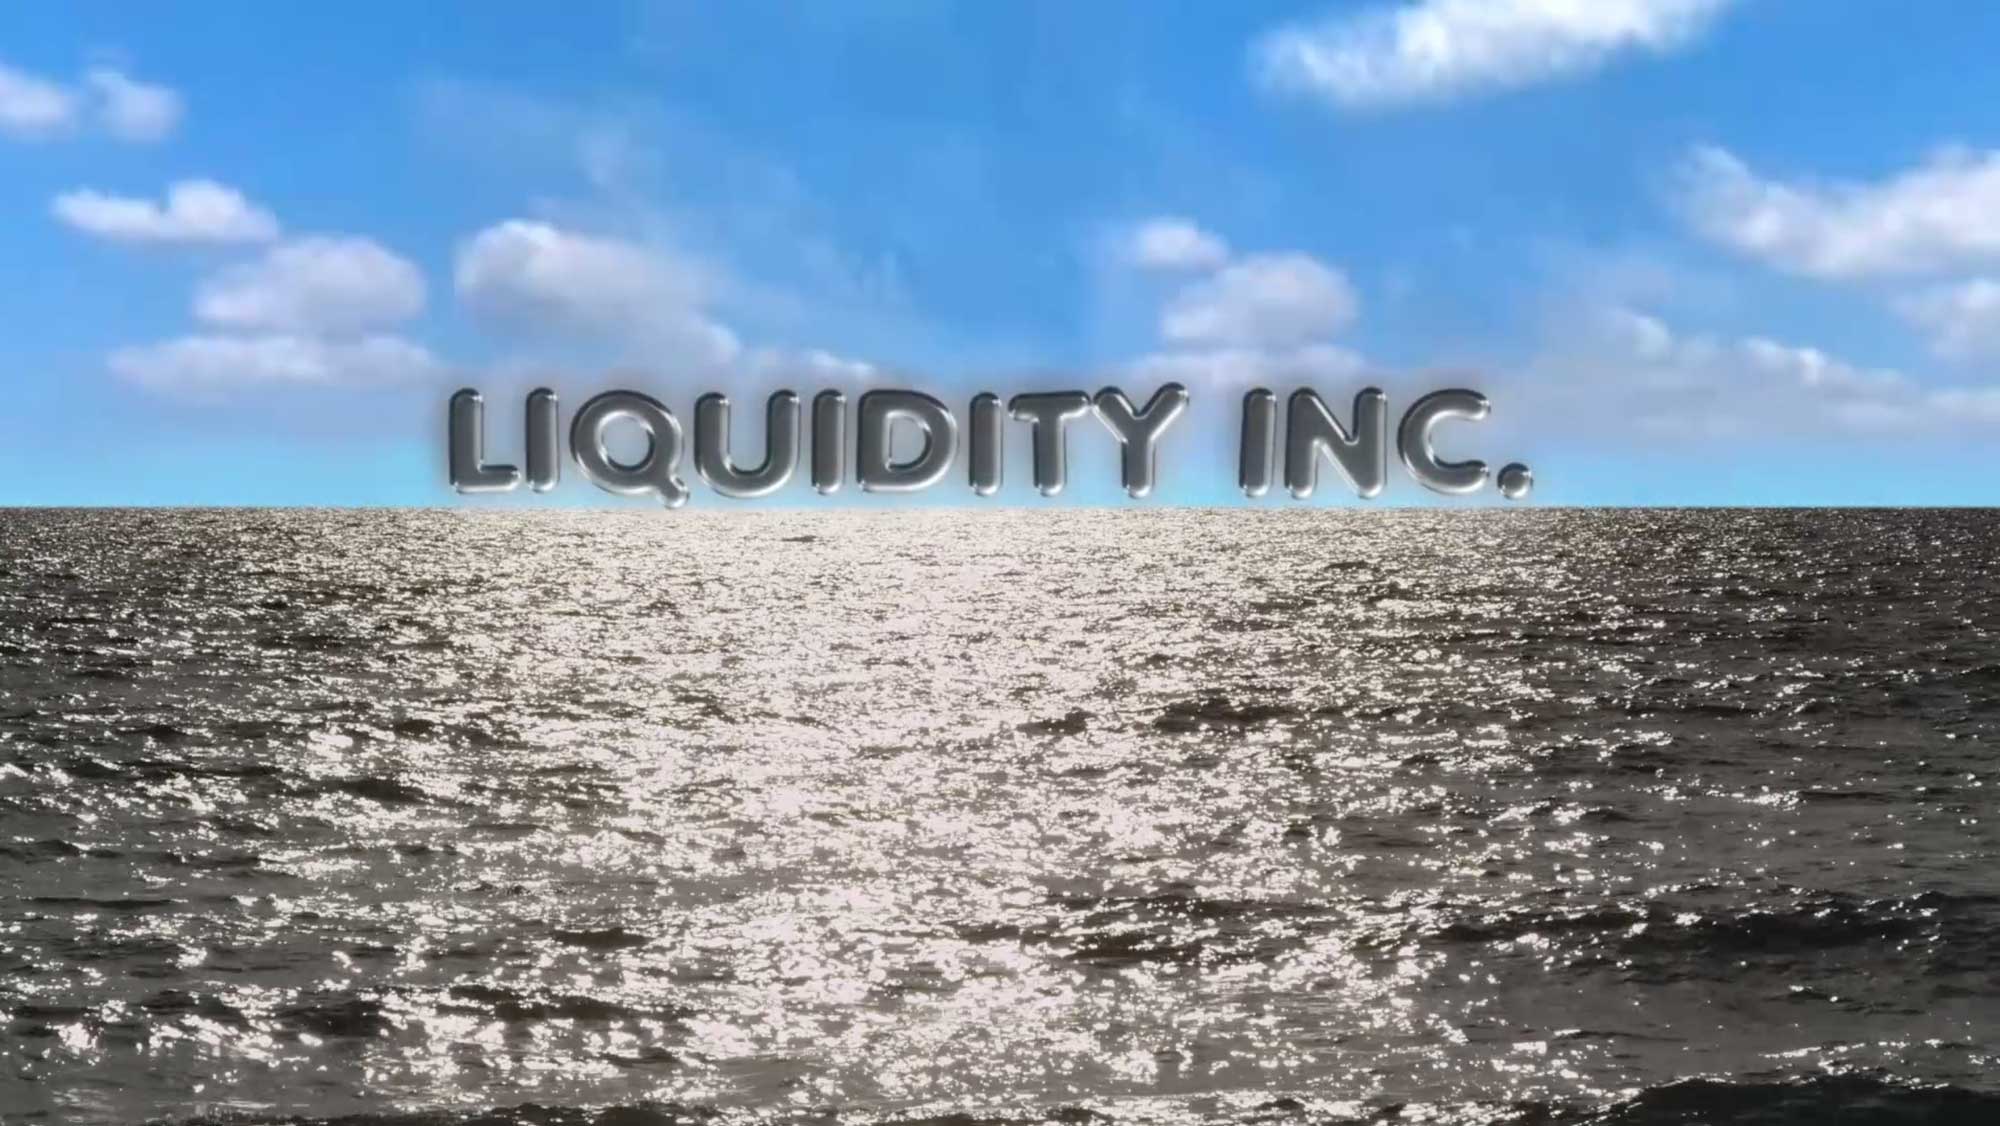 Hito Steyerl, Liquidity Inc. (2014) 